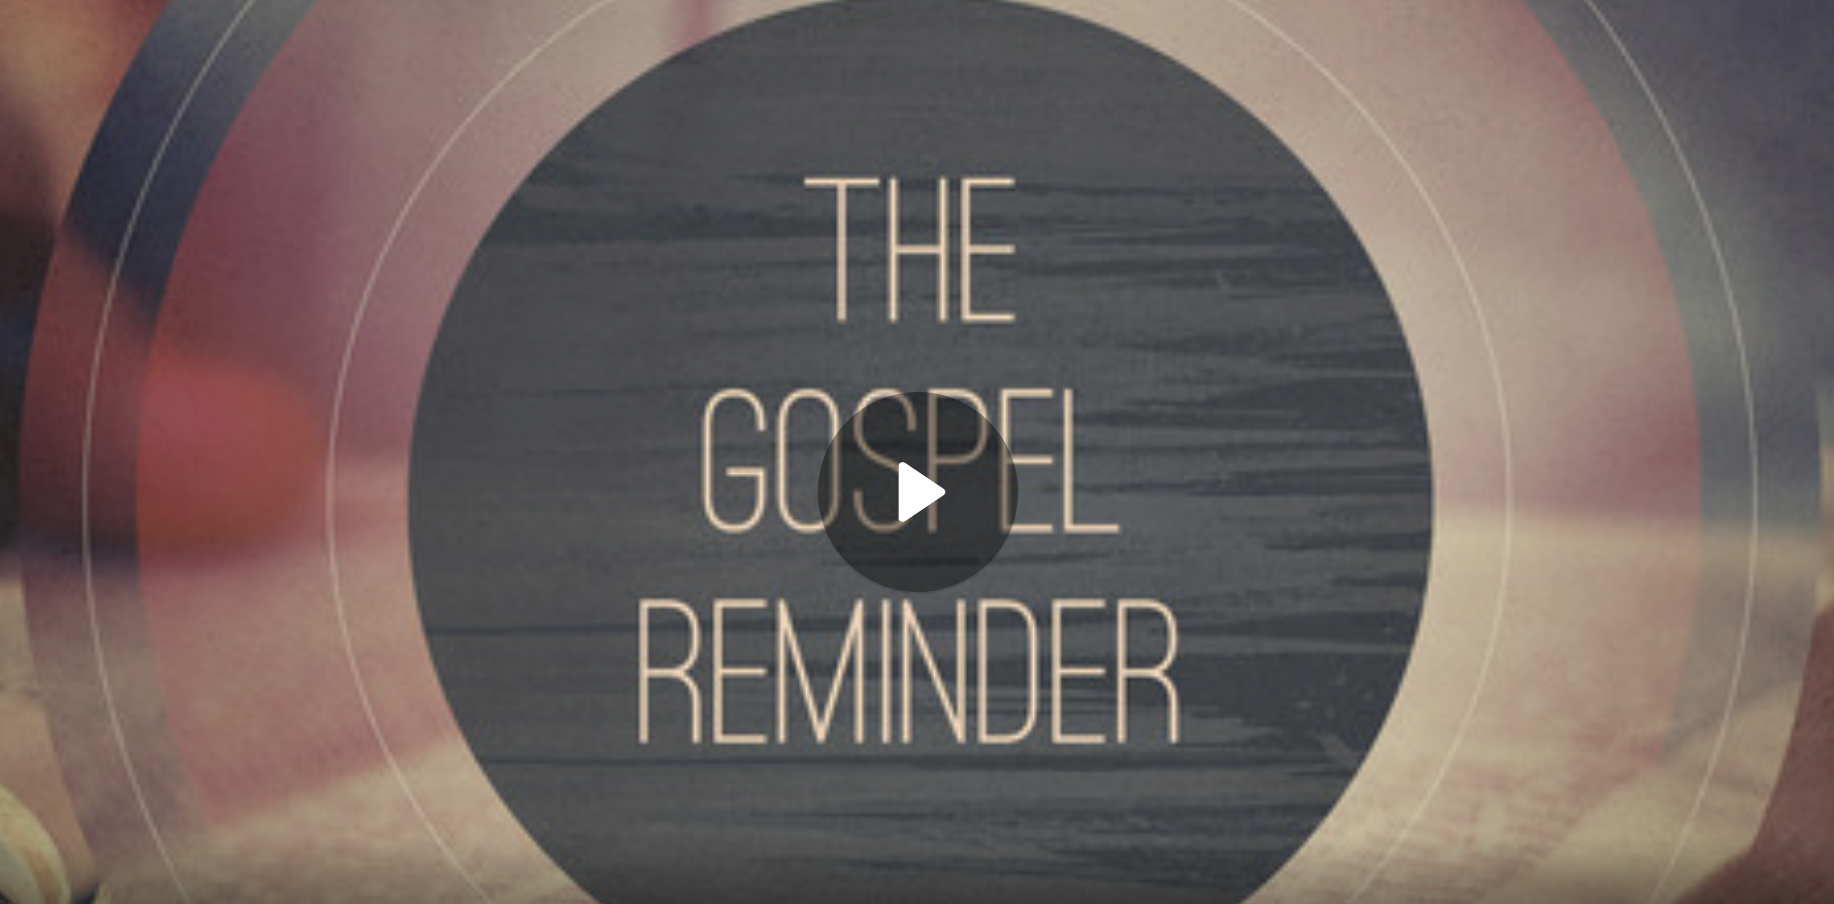 The Gospel Reminder